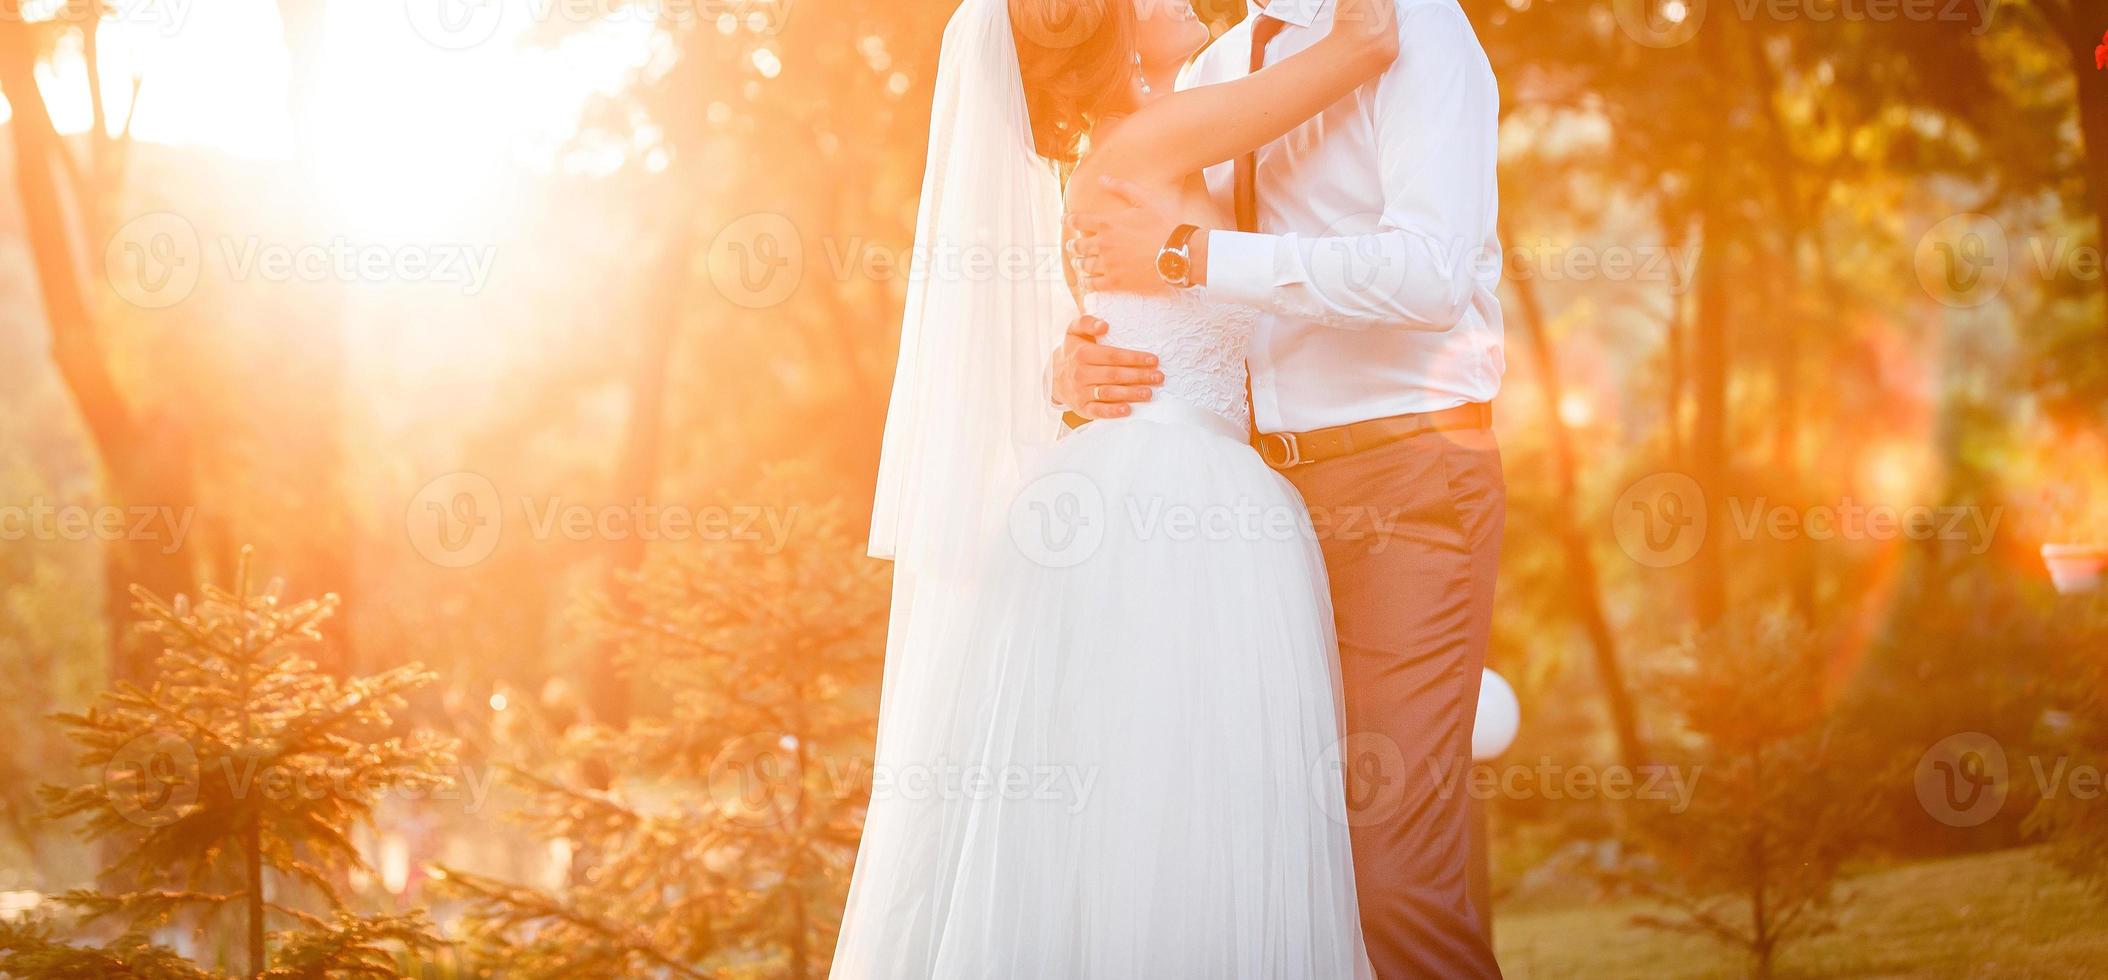 zonneschijn portret van gelukkig bruid en bruidegom buitenshuis in natuur plaats Bij zonsondergang warm zomertijd foto